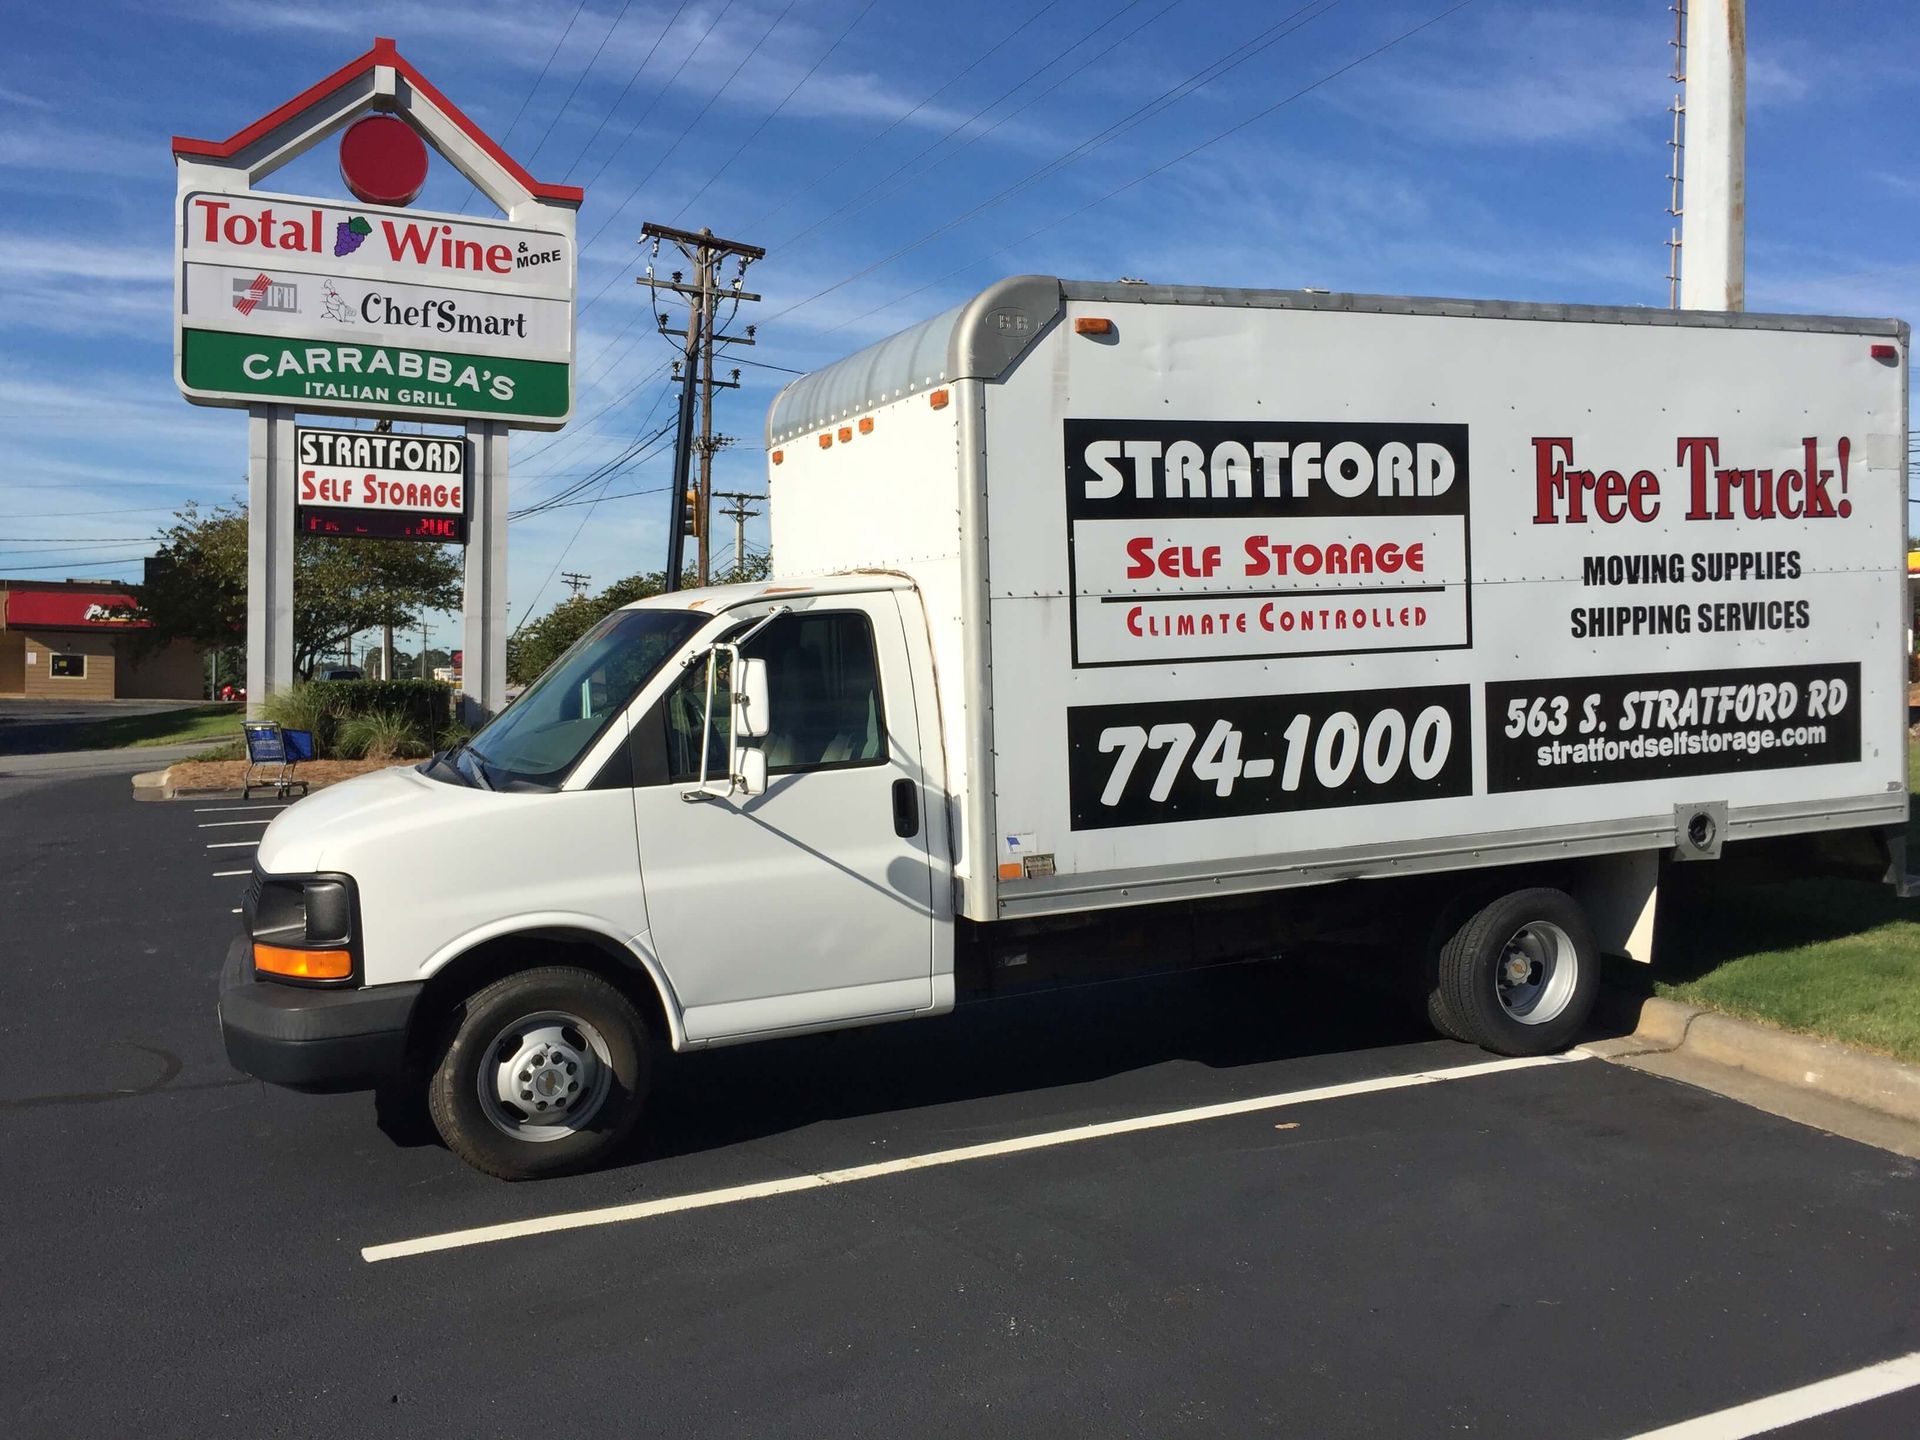 Free Truck with Stratford Storage